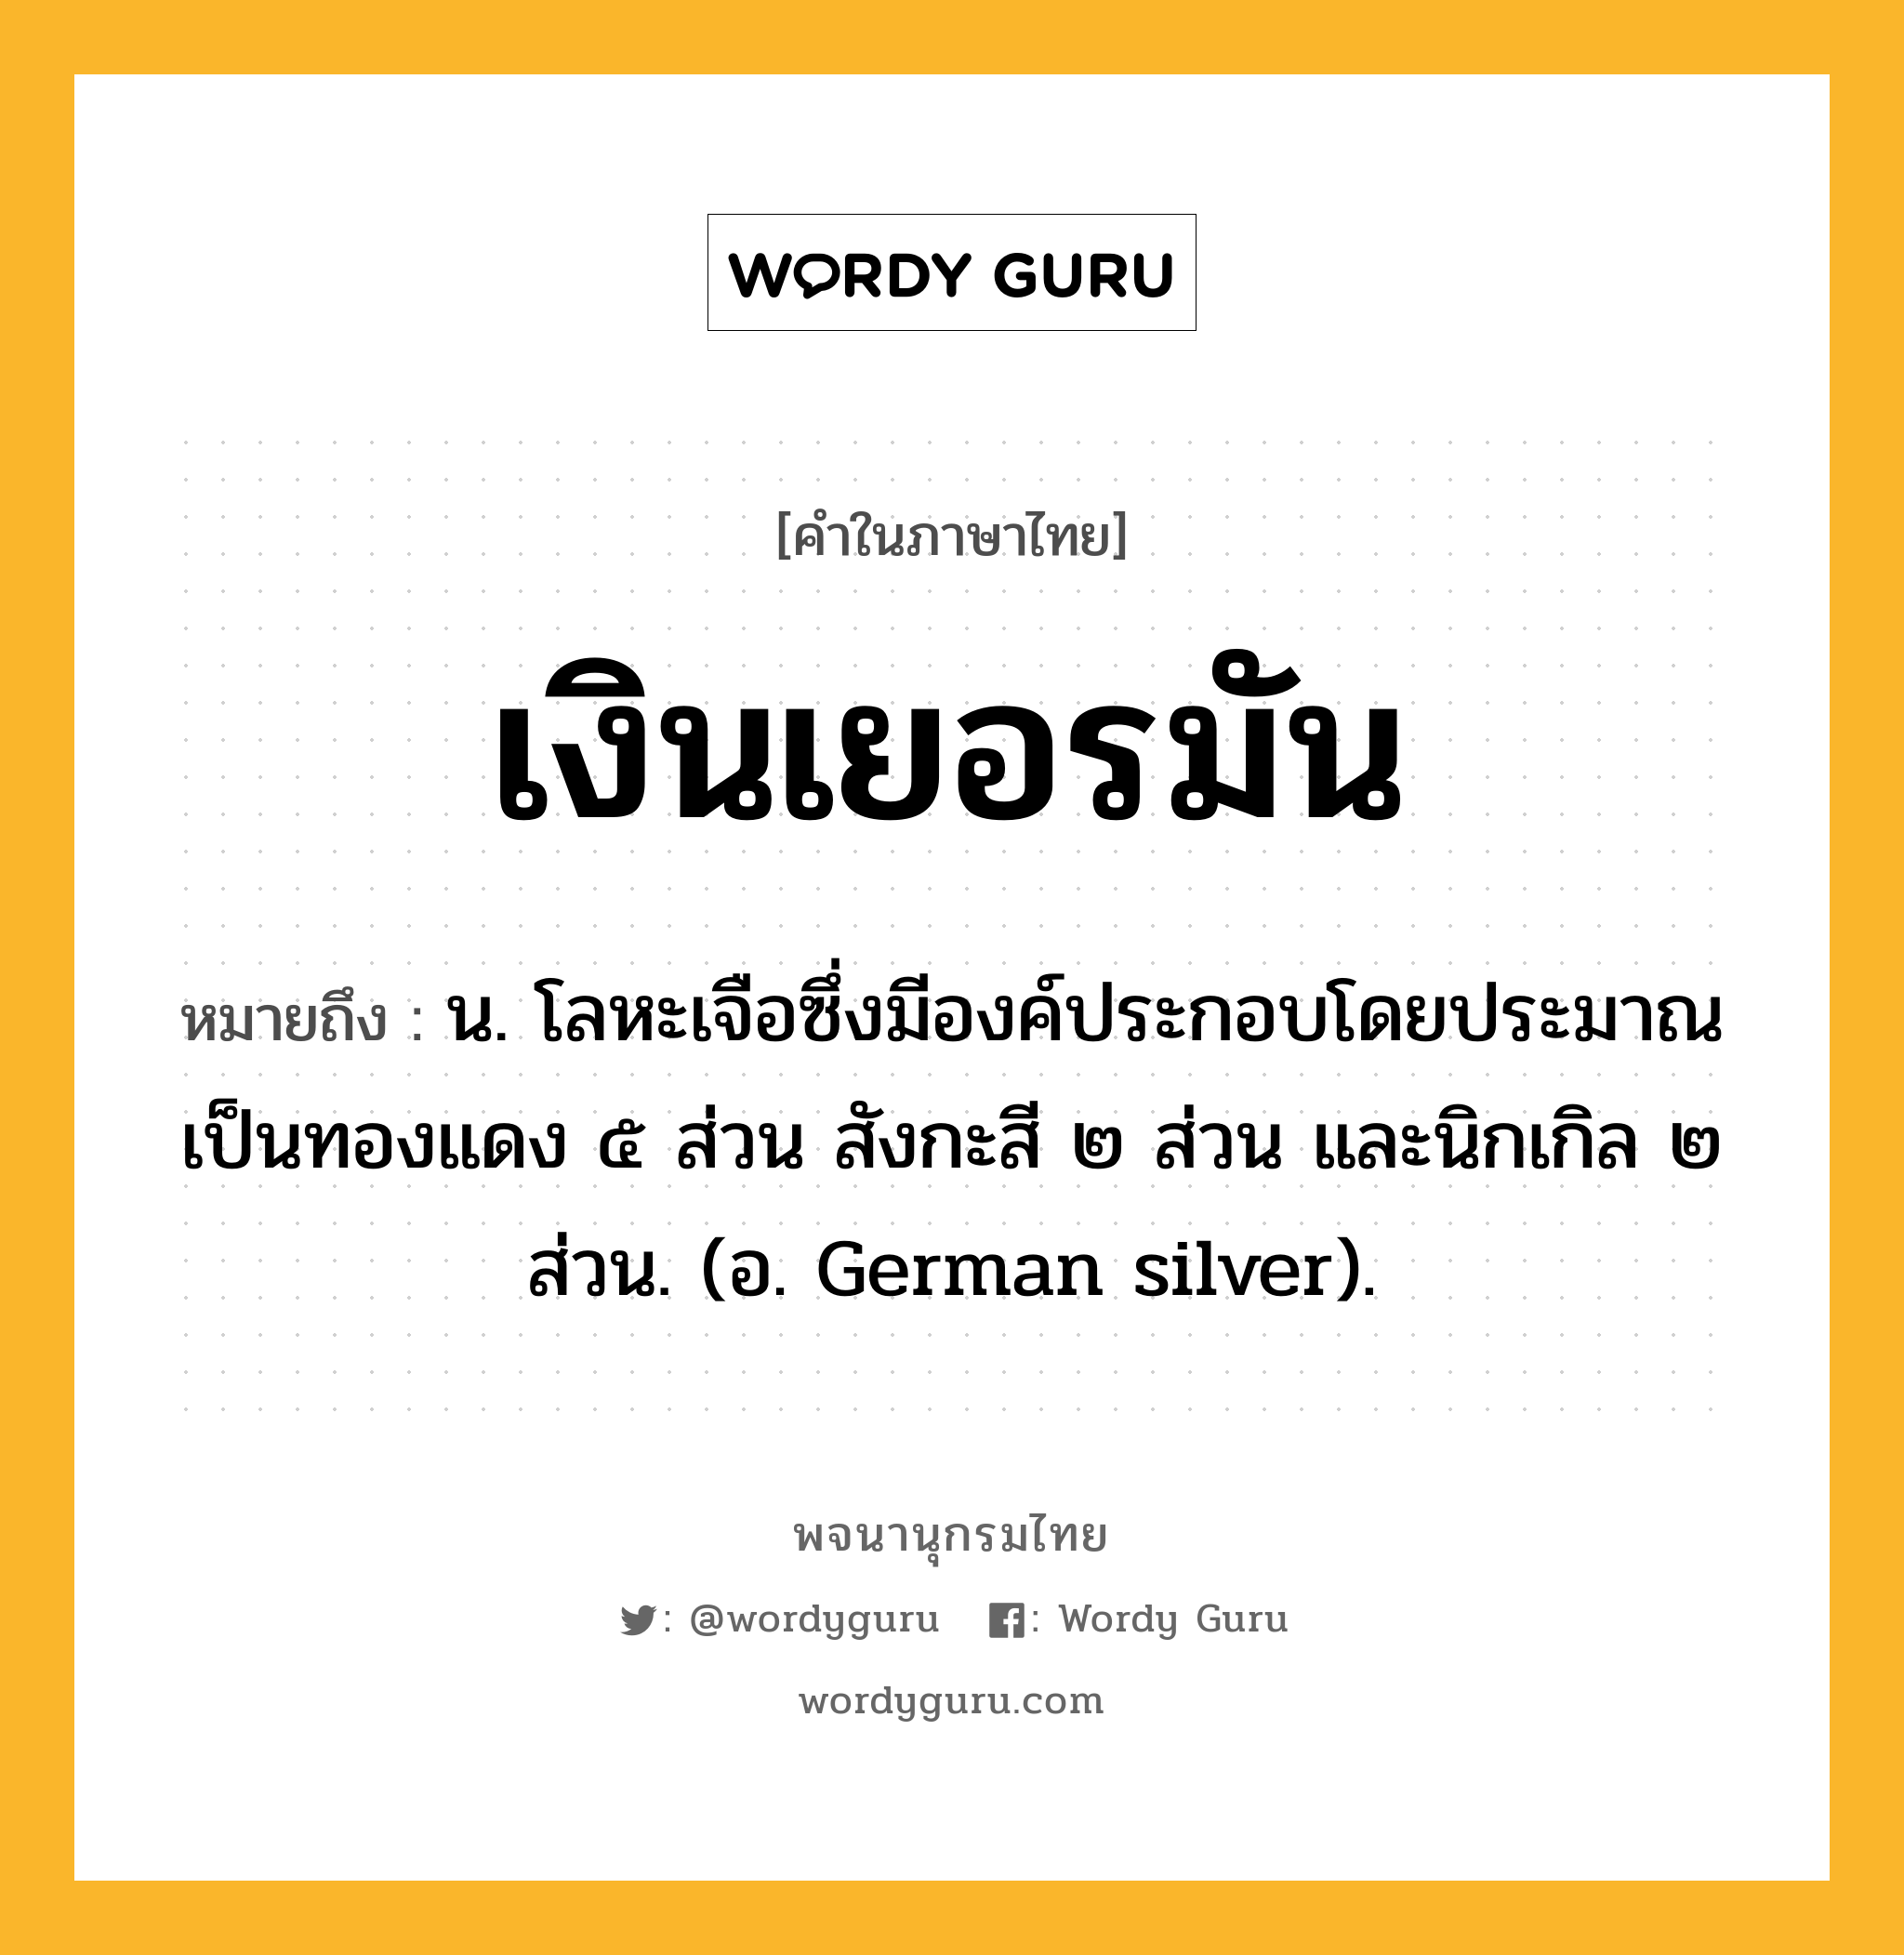 เงินเยอรมัน ความหมาย หมายถึงอะไร?, คำในภาษาไทย เงินเยอรมัน หมายถึง น. โลหะเจือซึ่งมีองค์ประกอบโดยประมาณเป็นทองแดง ๕ ส่วน สังกะสี ๒ ส่วน และนิกเกิล ๒ ส่วน. (อ. German silver).